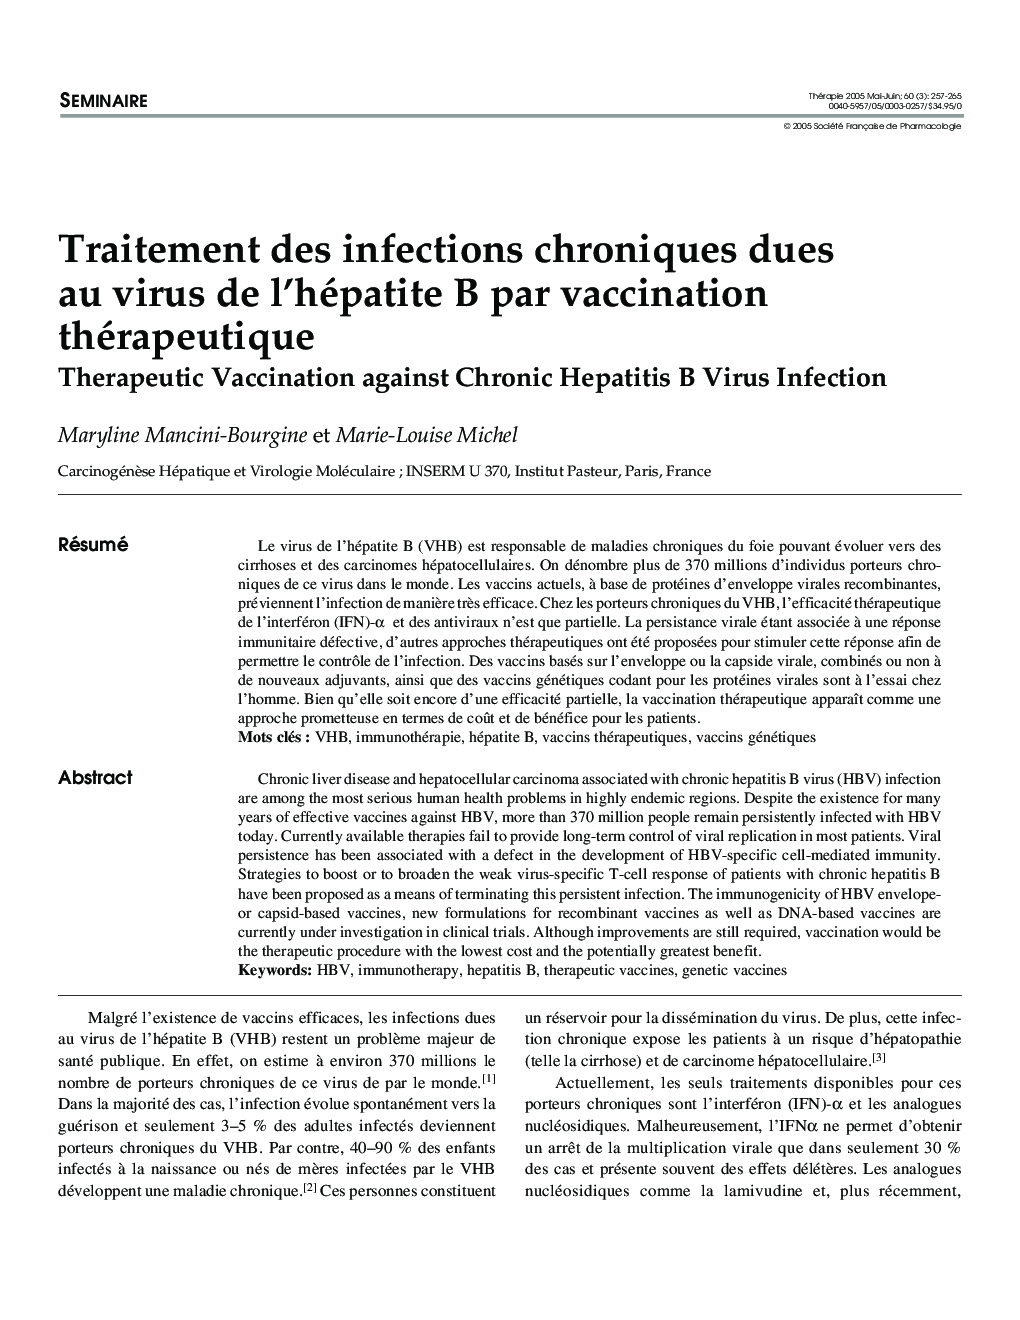 Traitement des infections chroniques dues au virus de l'hépatite B par vaccination thérapeutique